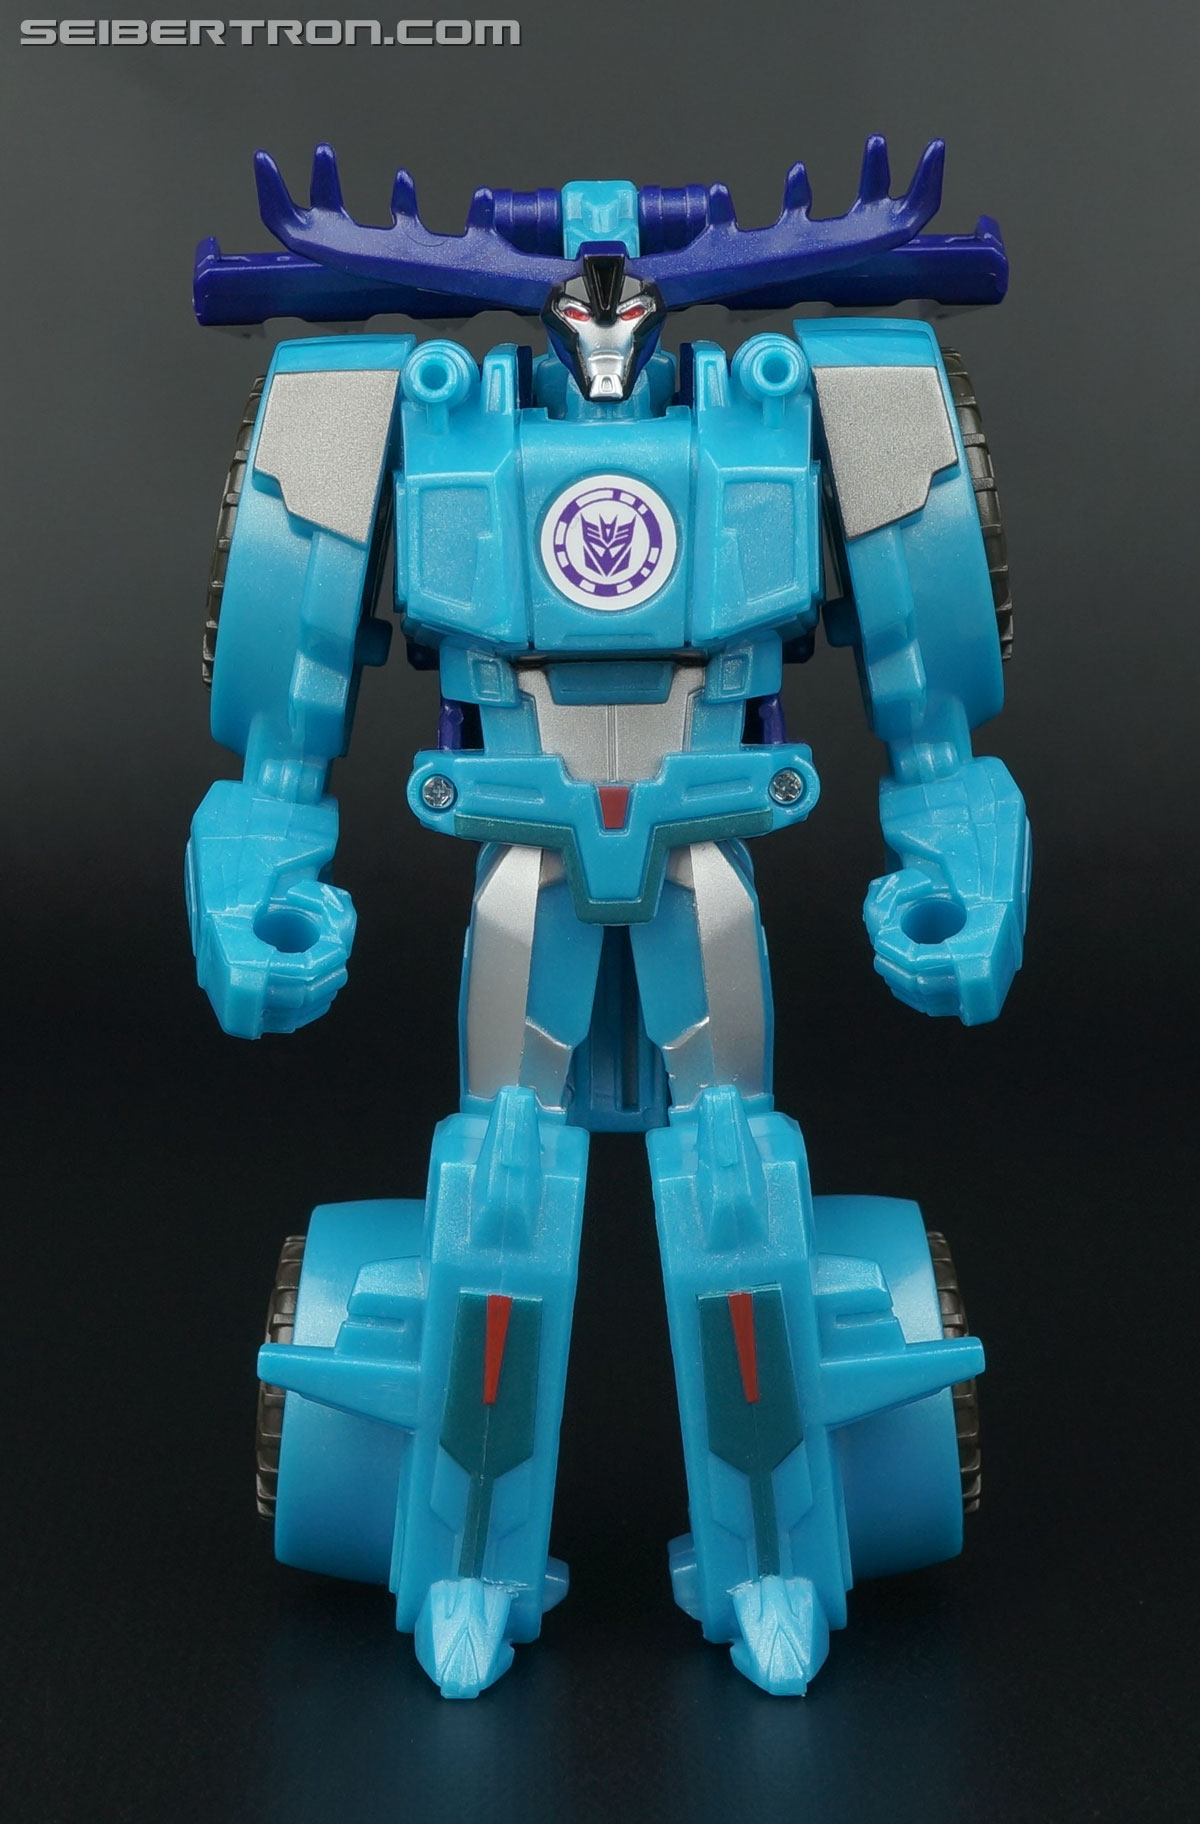 Код transformers. Transformers Robots in Disguise коды. Transformers Robots in Disguise Thunderhoof. Трансформеры Robots in Disguise код. Transformers коды для сканирования.